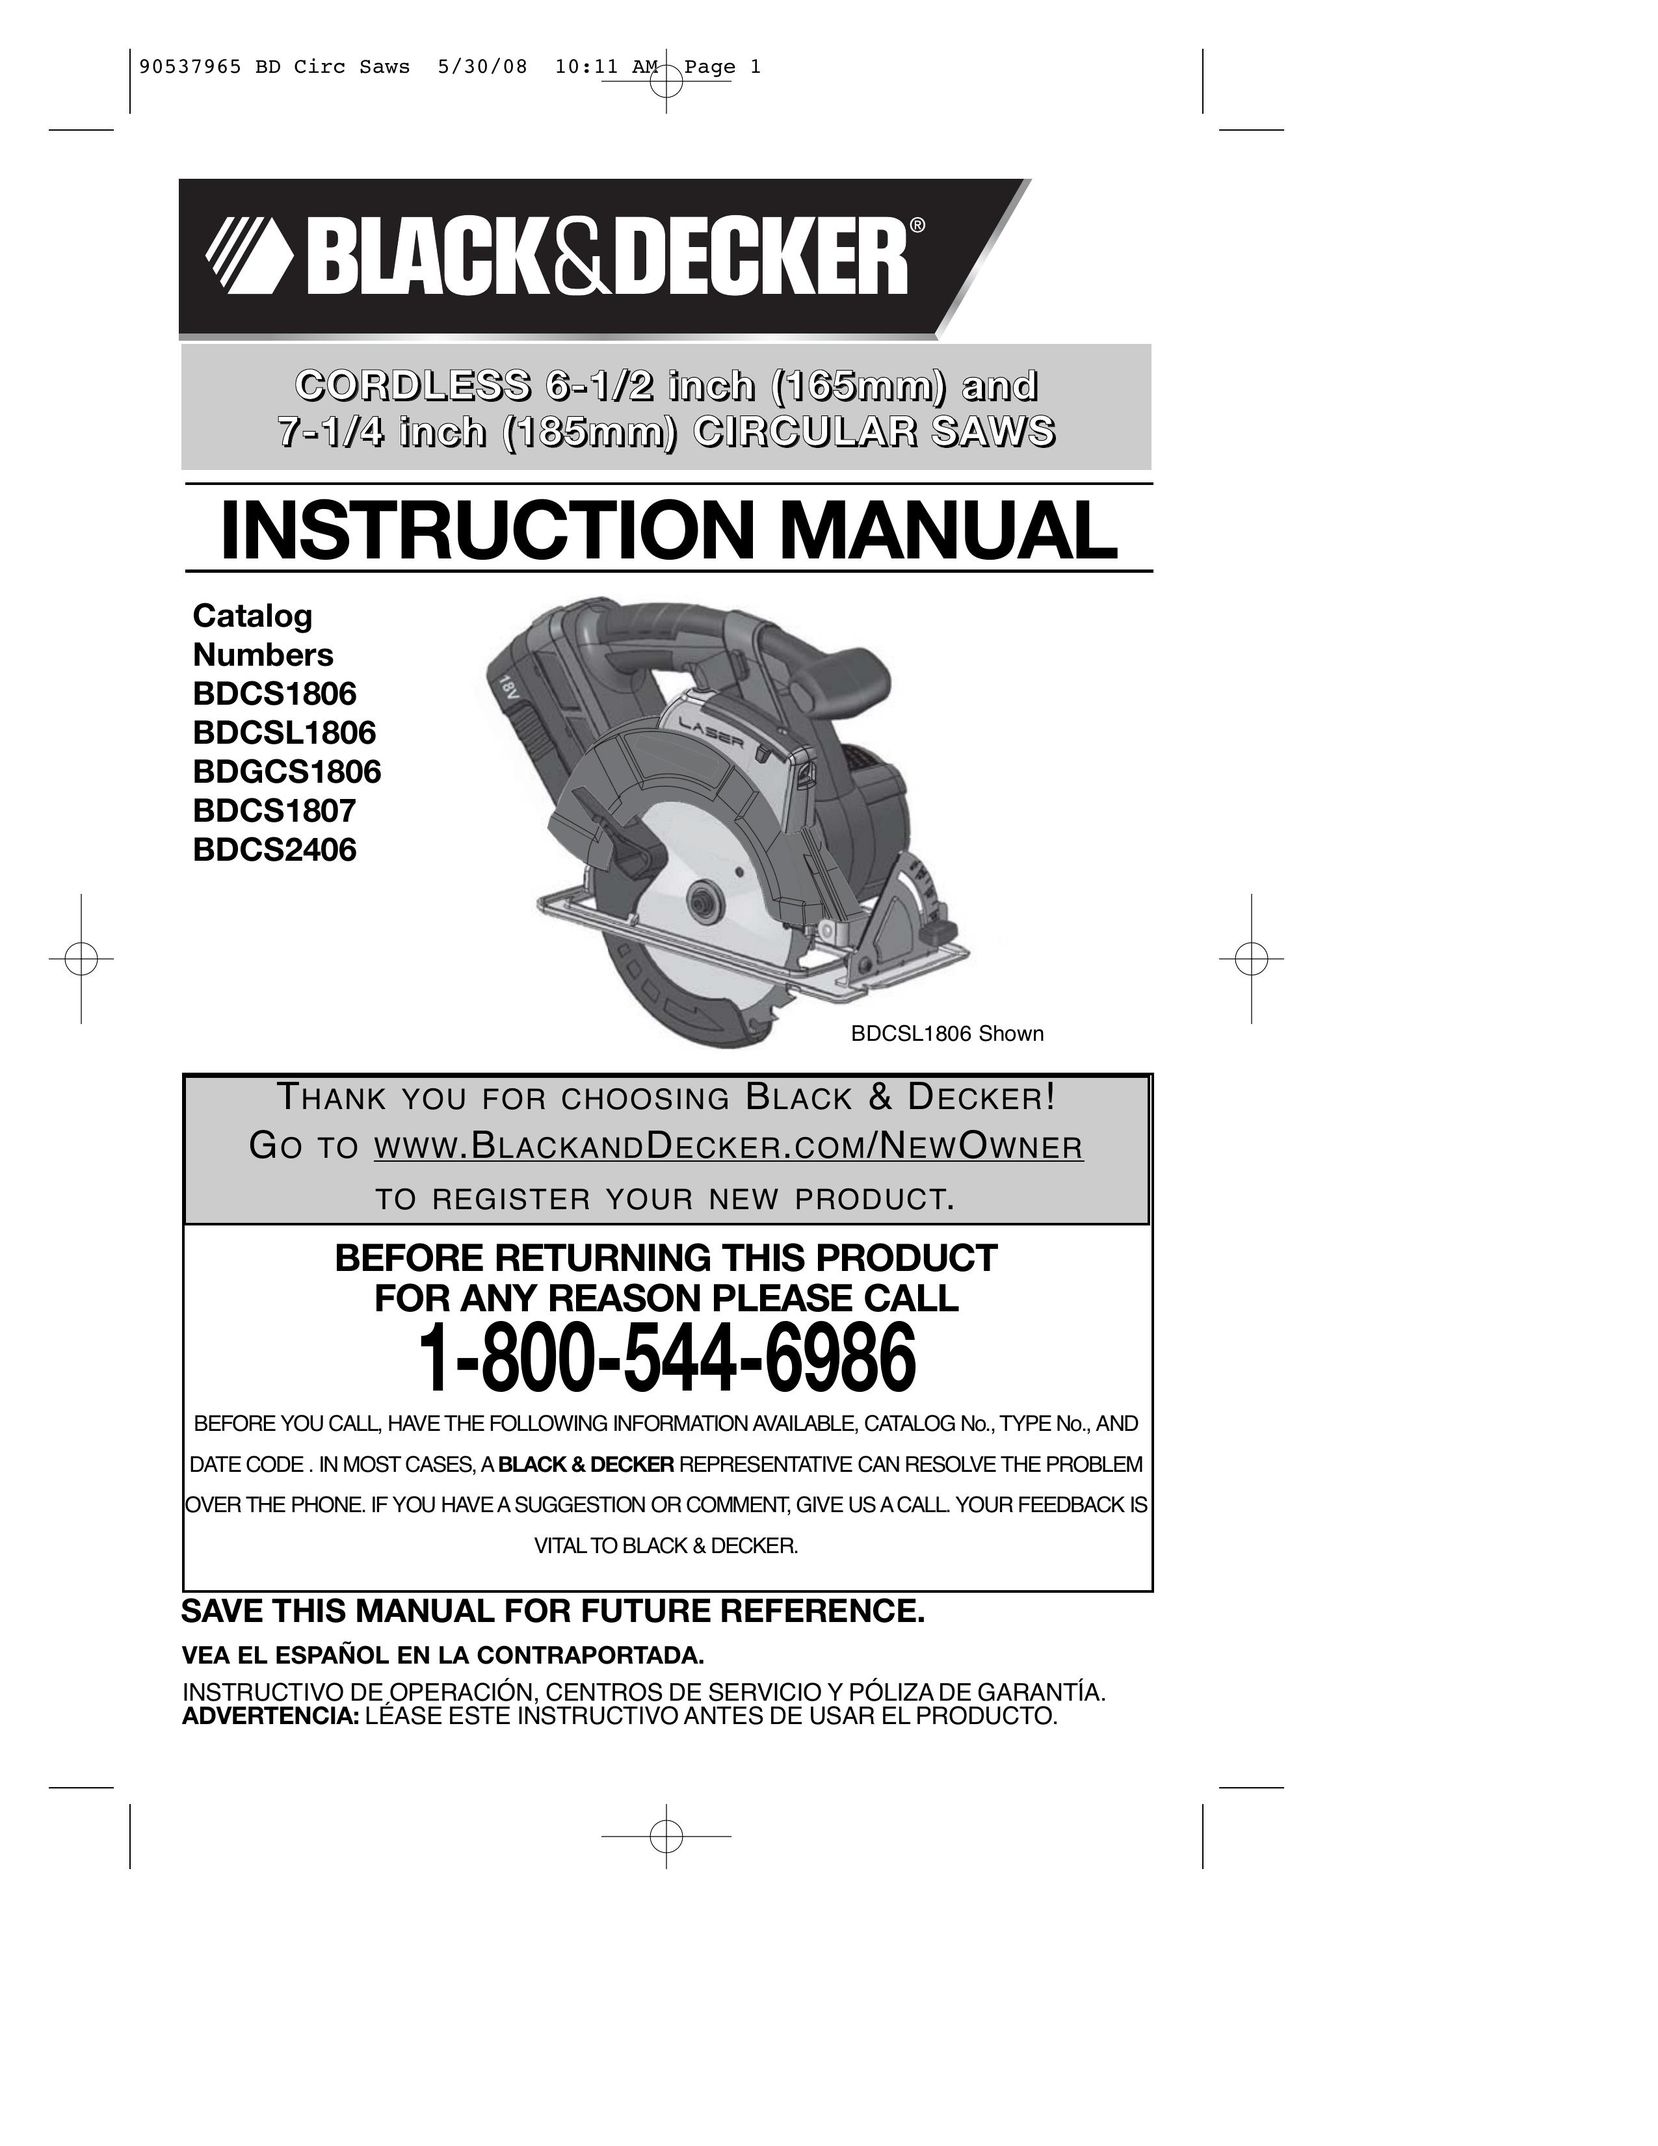 Black & Decker BDCS2406 Cordless Saw User Manual